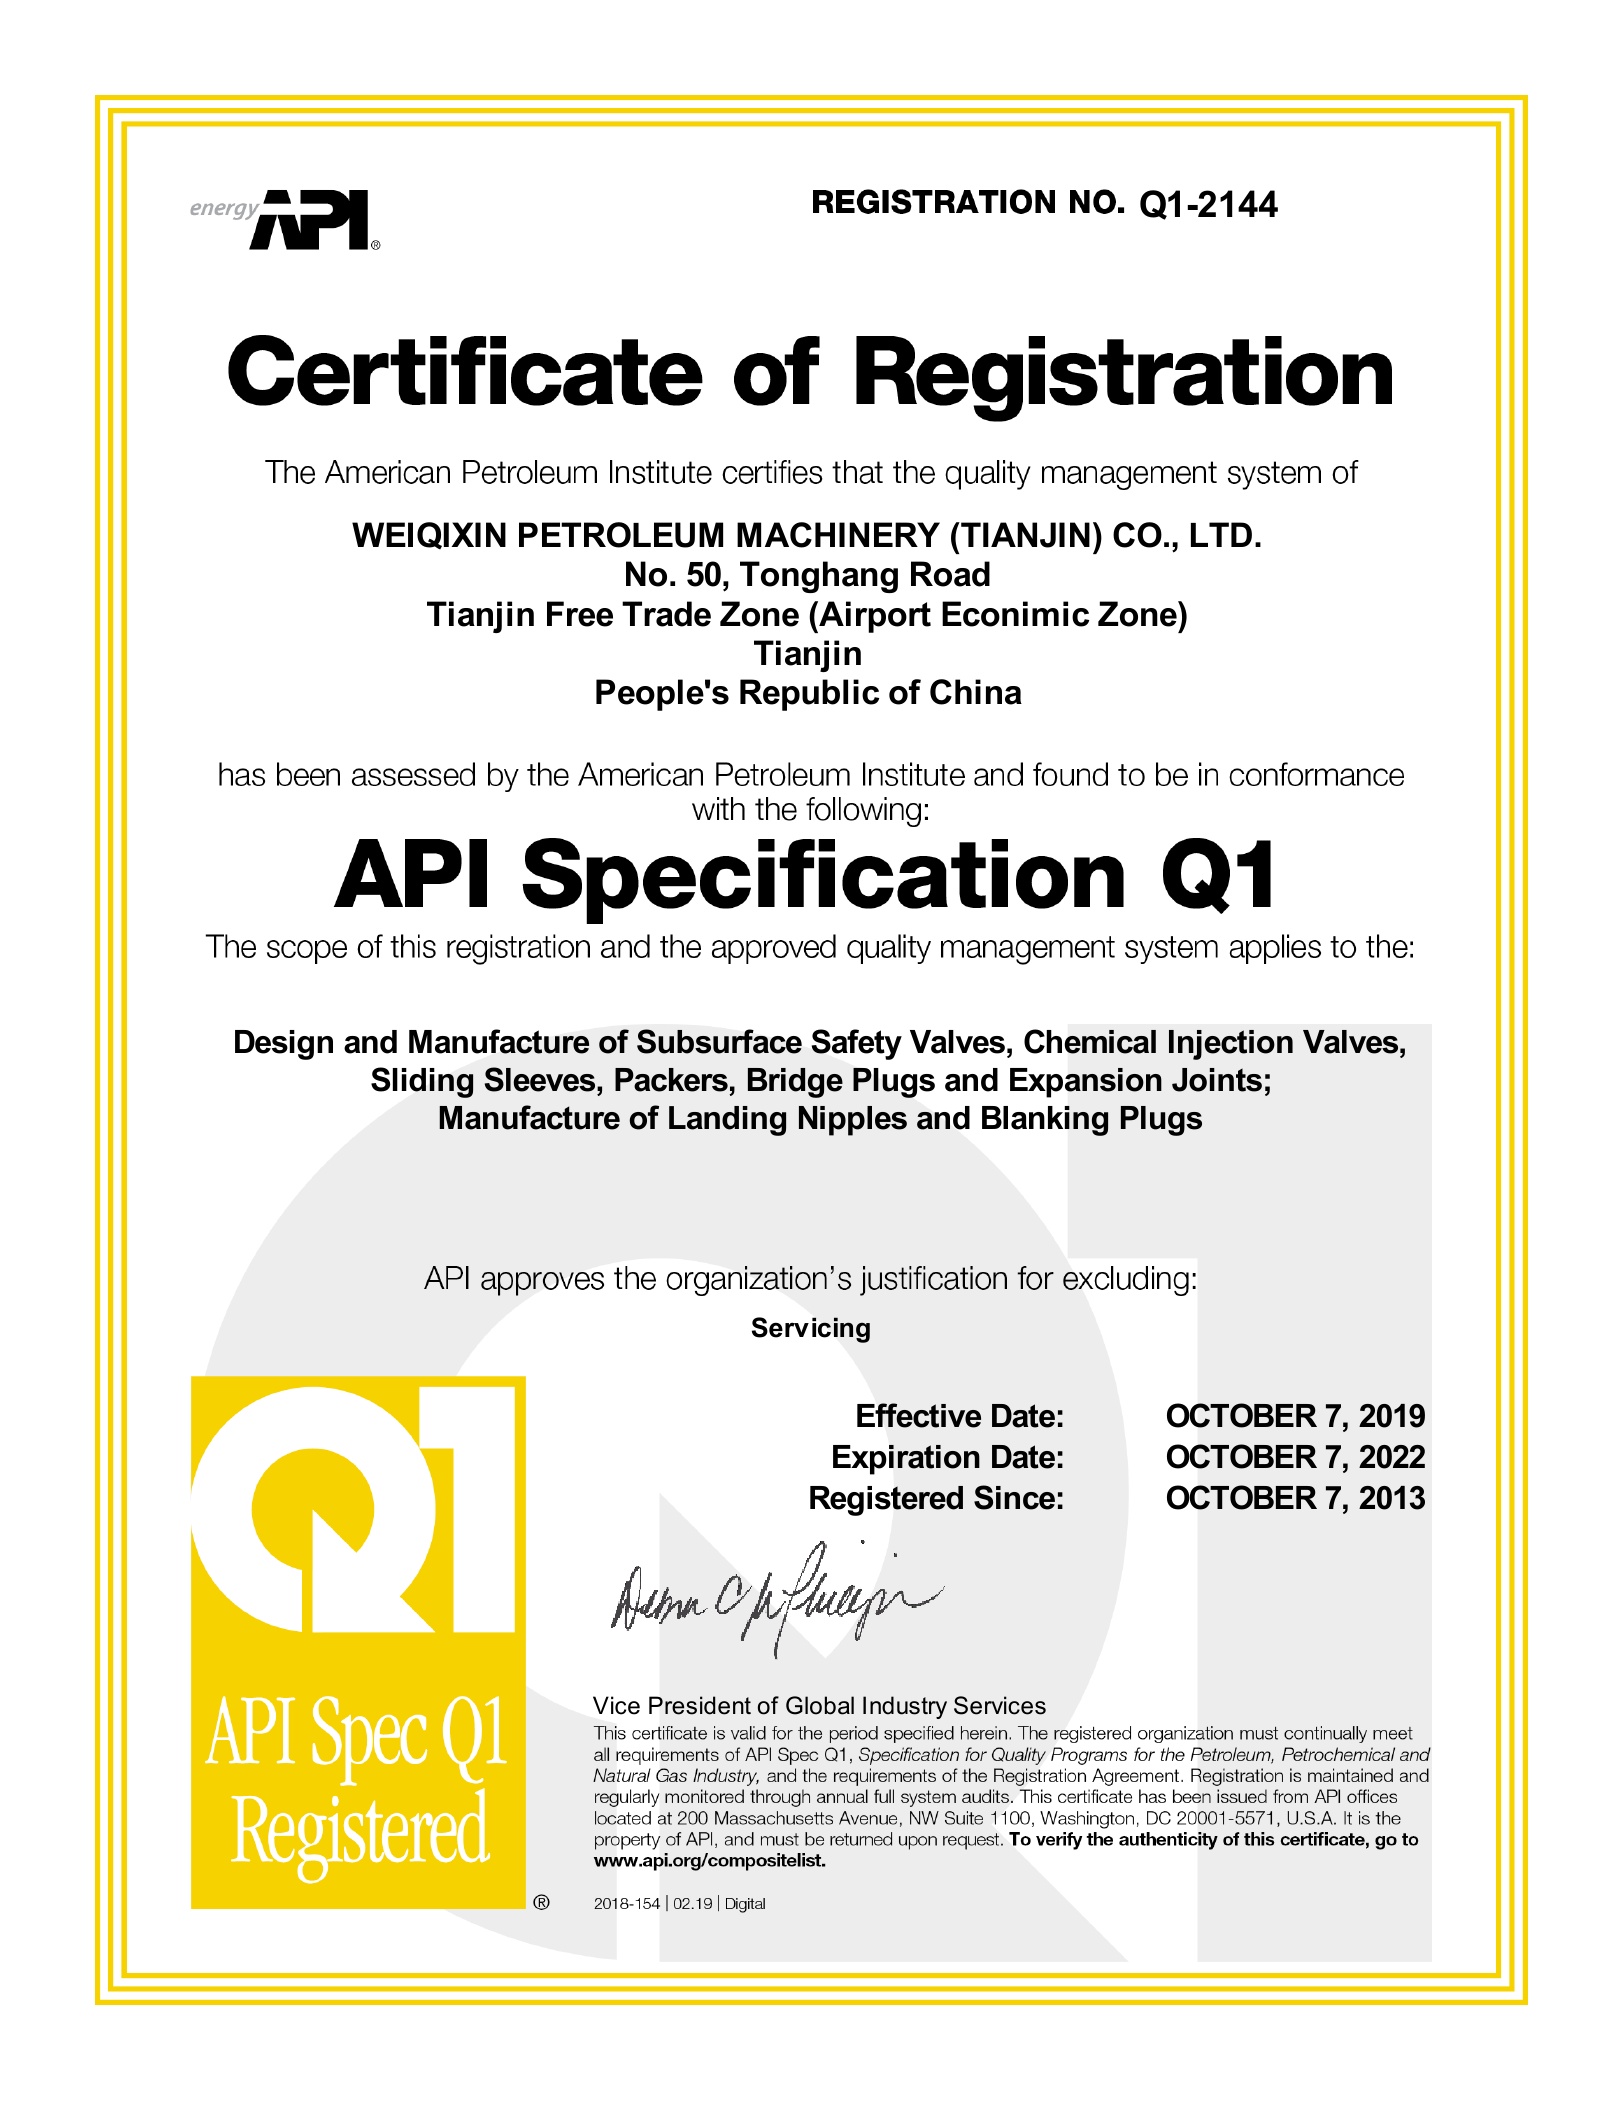 CertificateQ1-2144_20190815135232